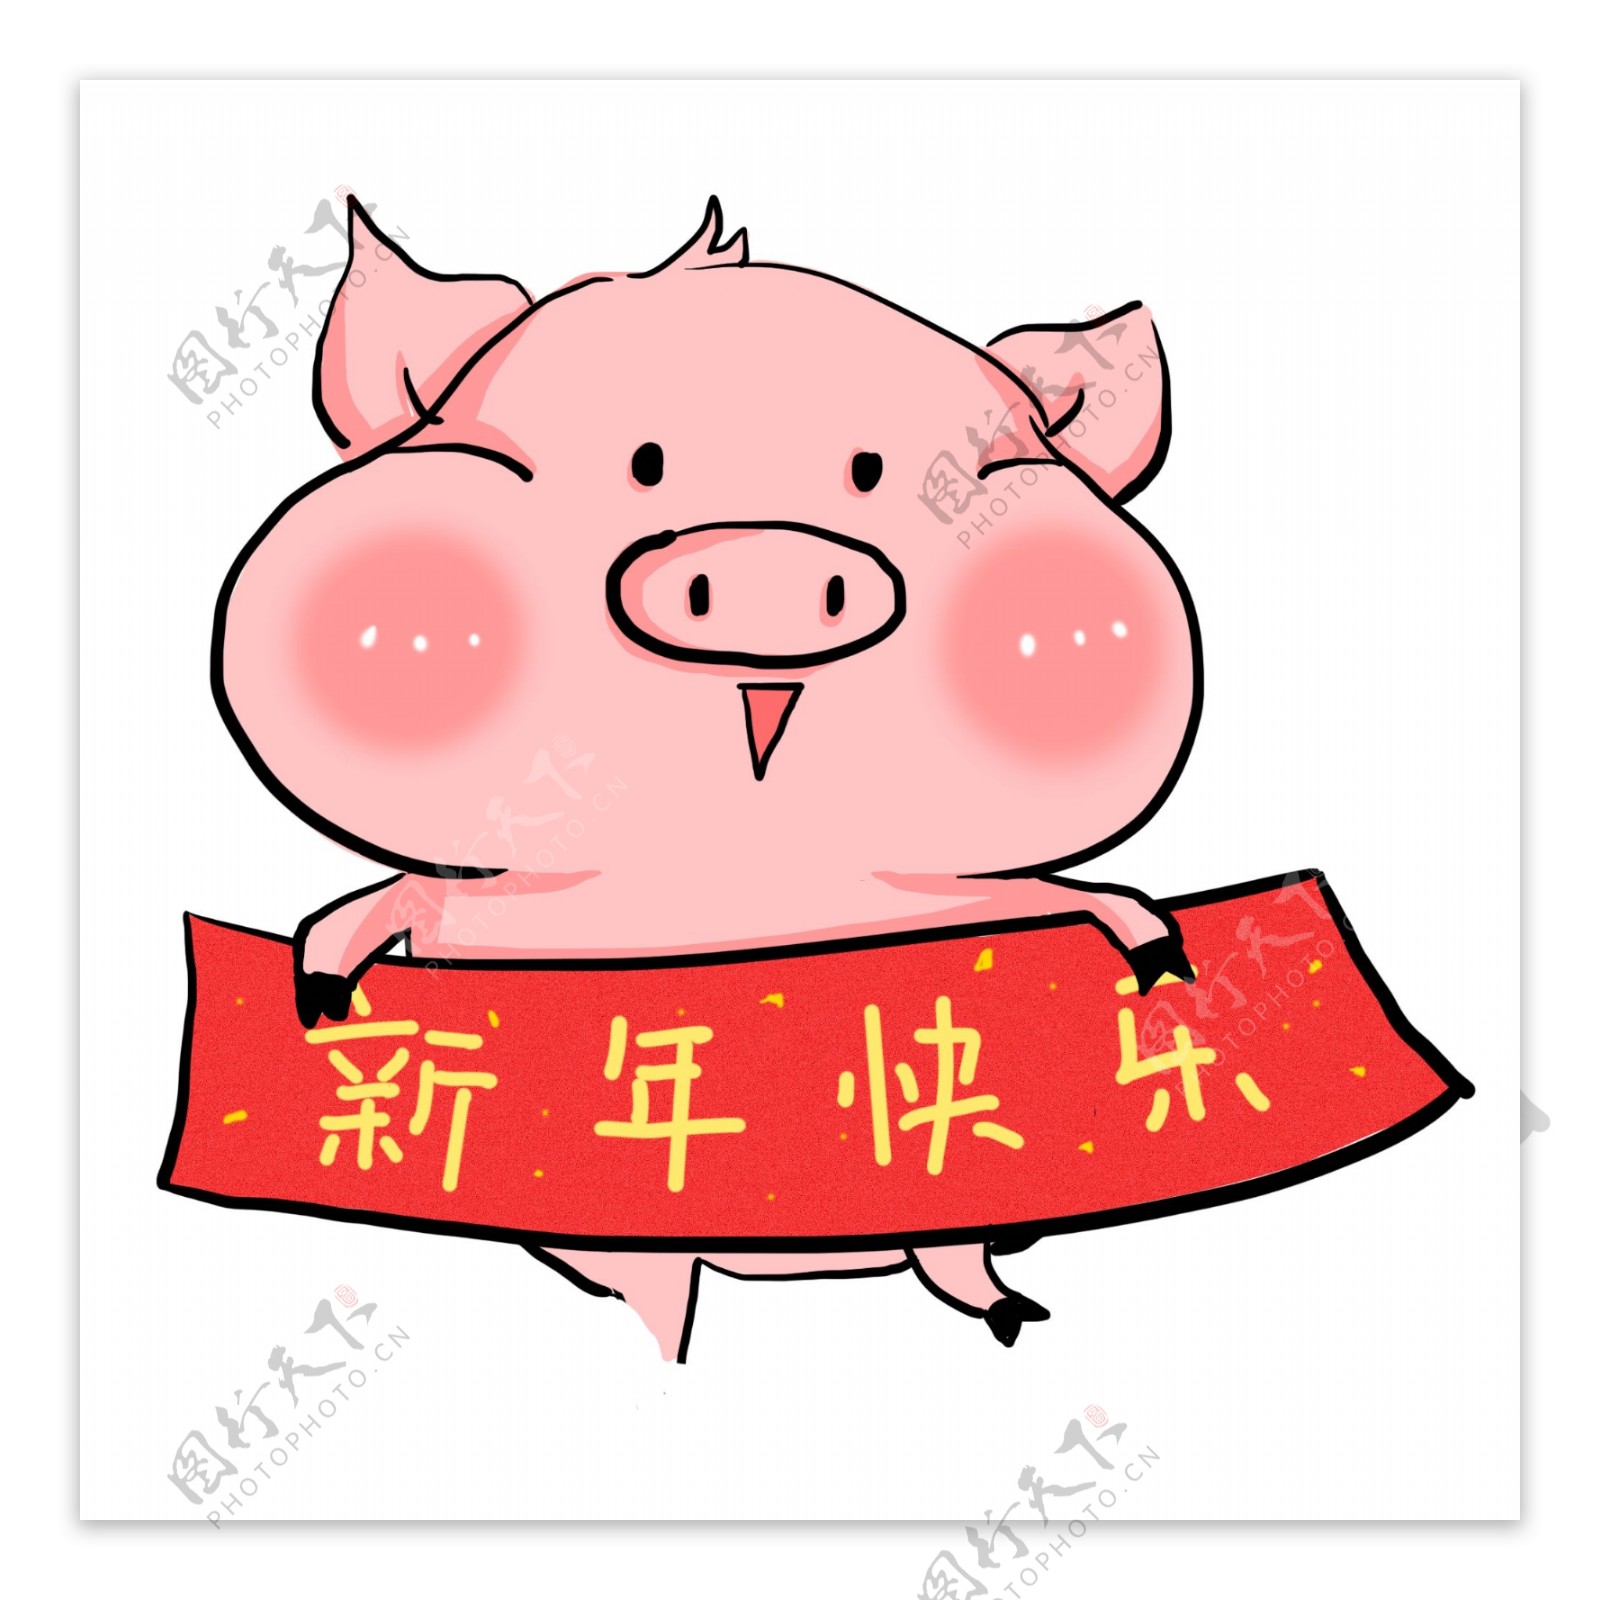 手绘卡通可爱小猪动物元素